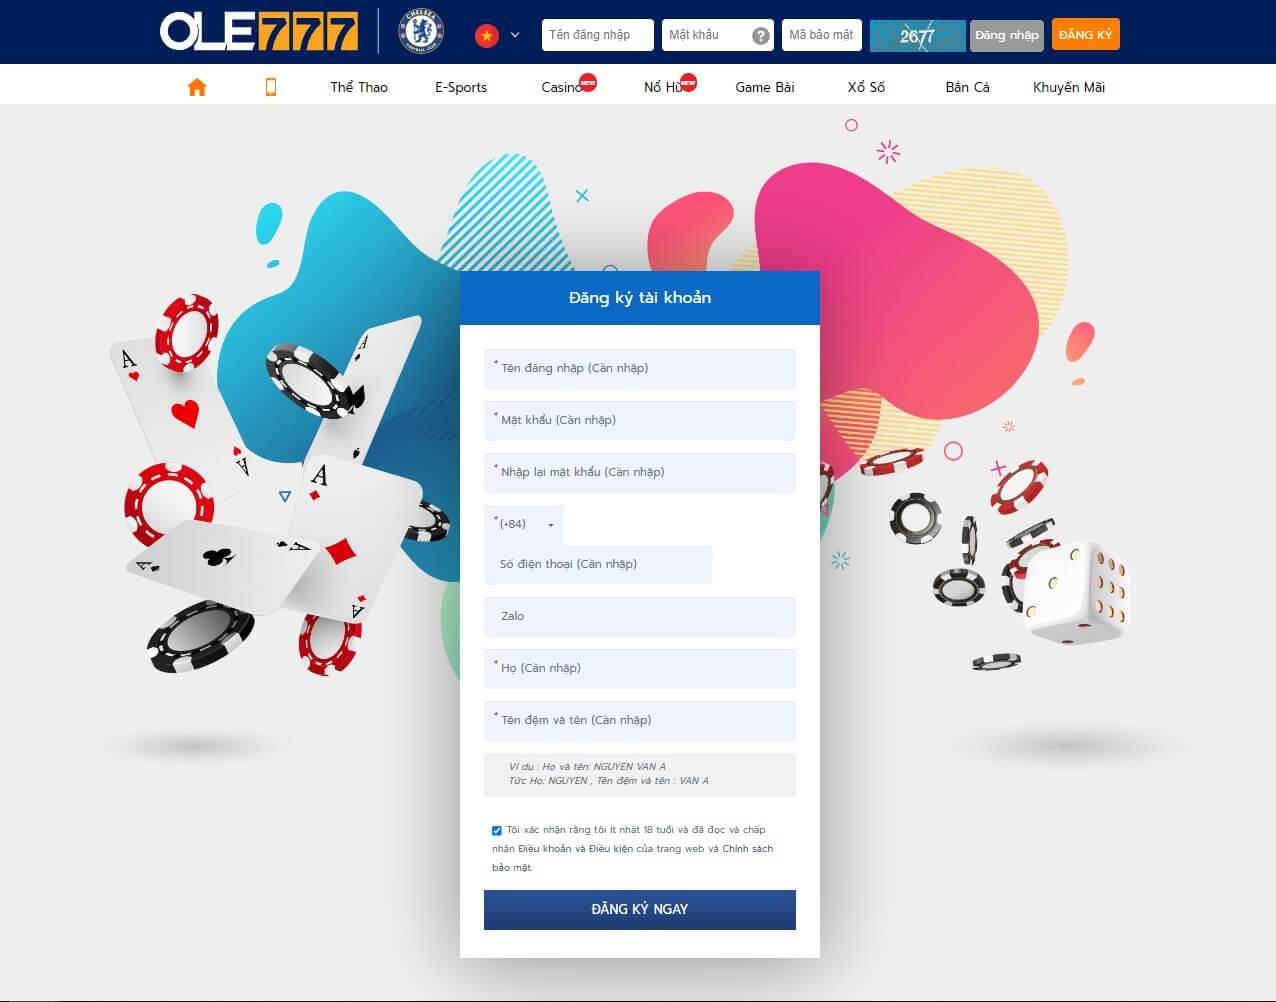 Hướng dẫn đăng ký và đăng nhập tài khoản tại Ole777